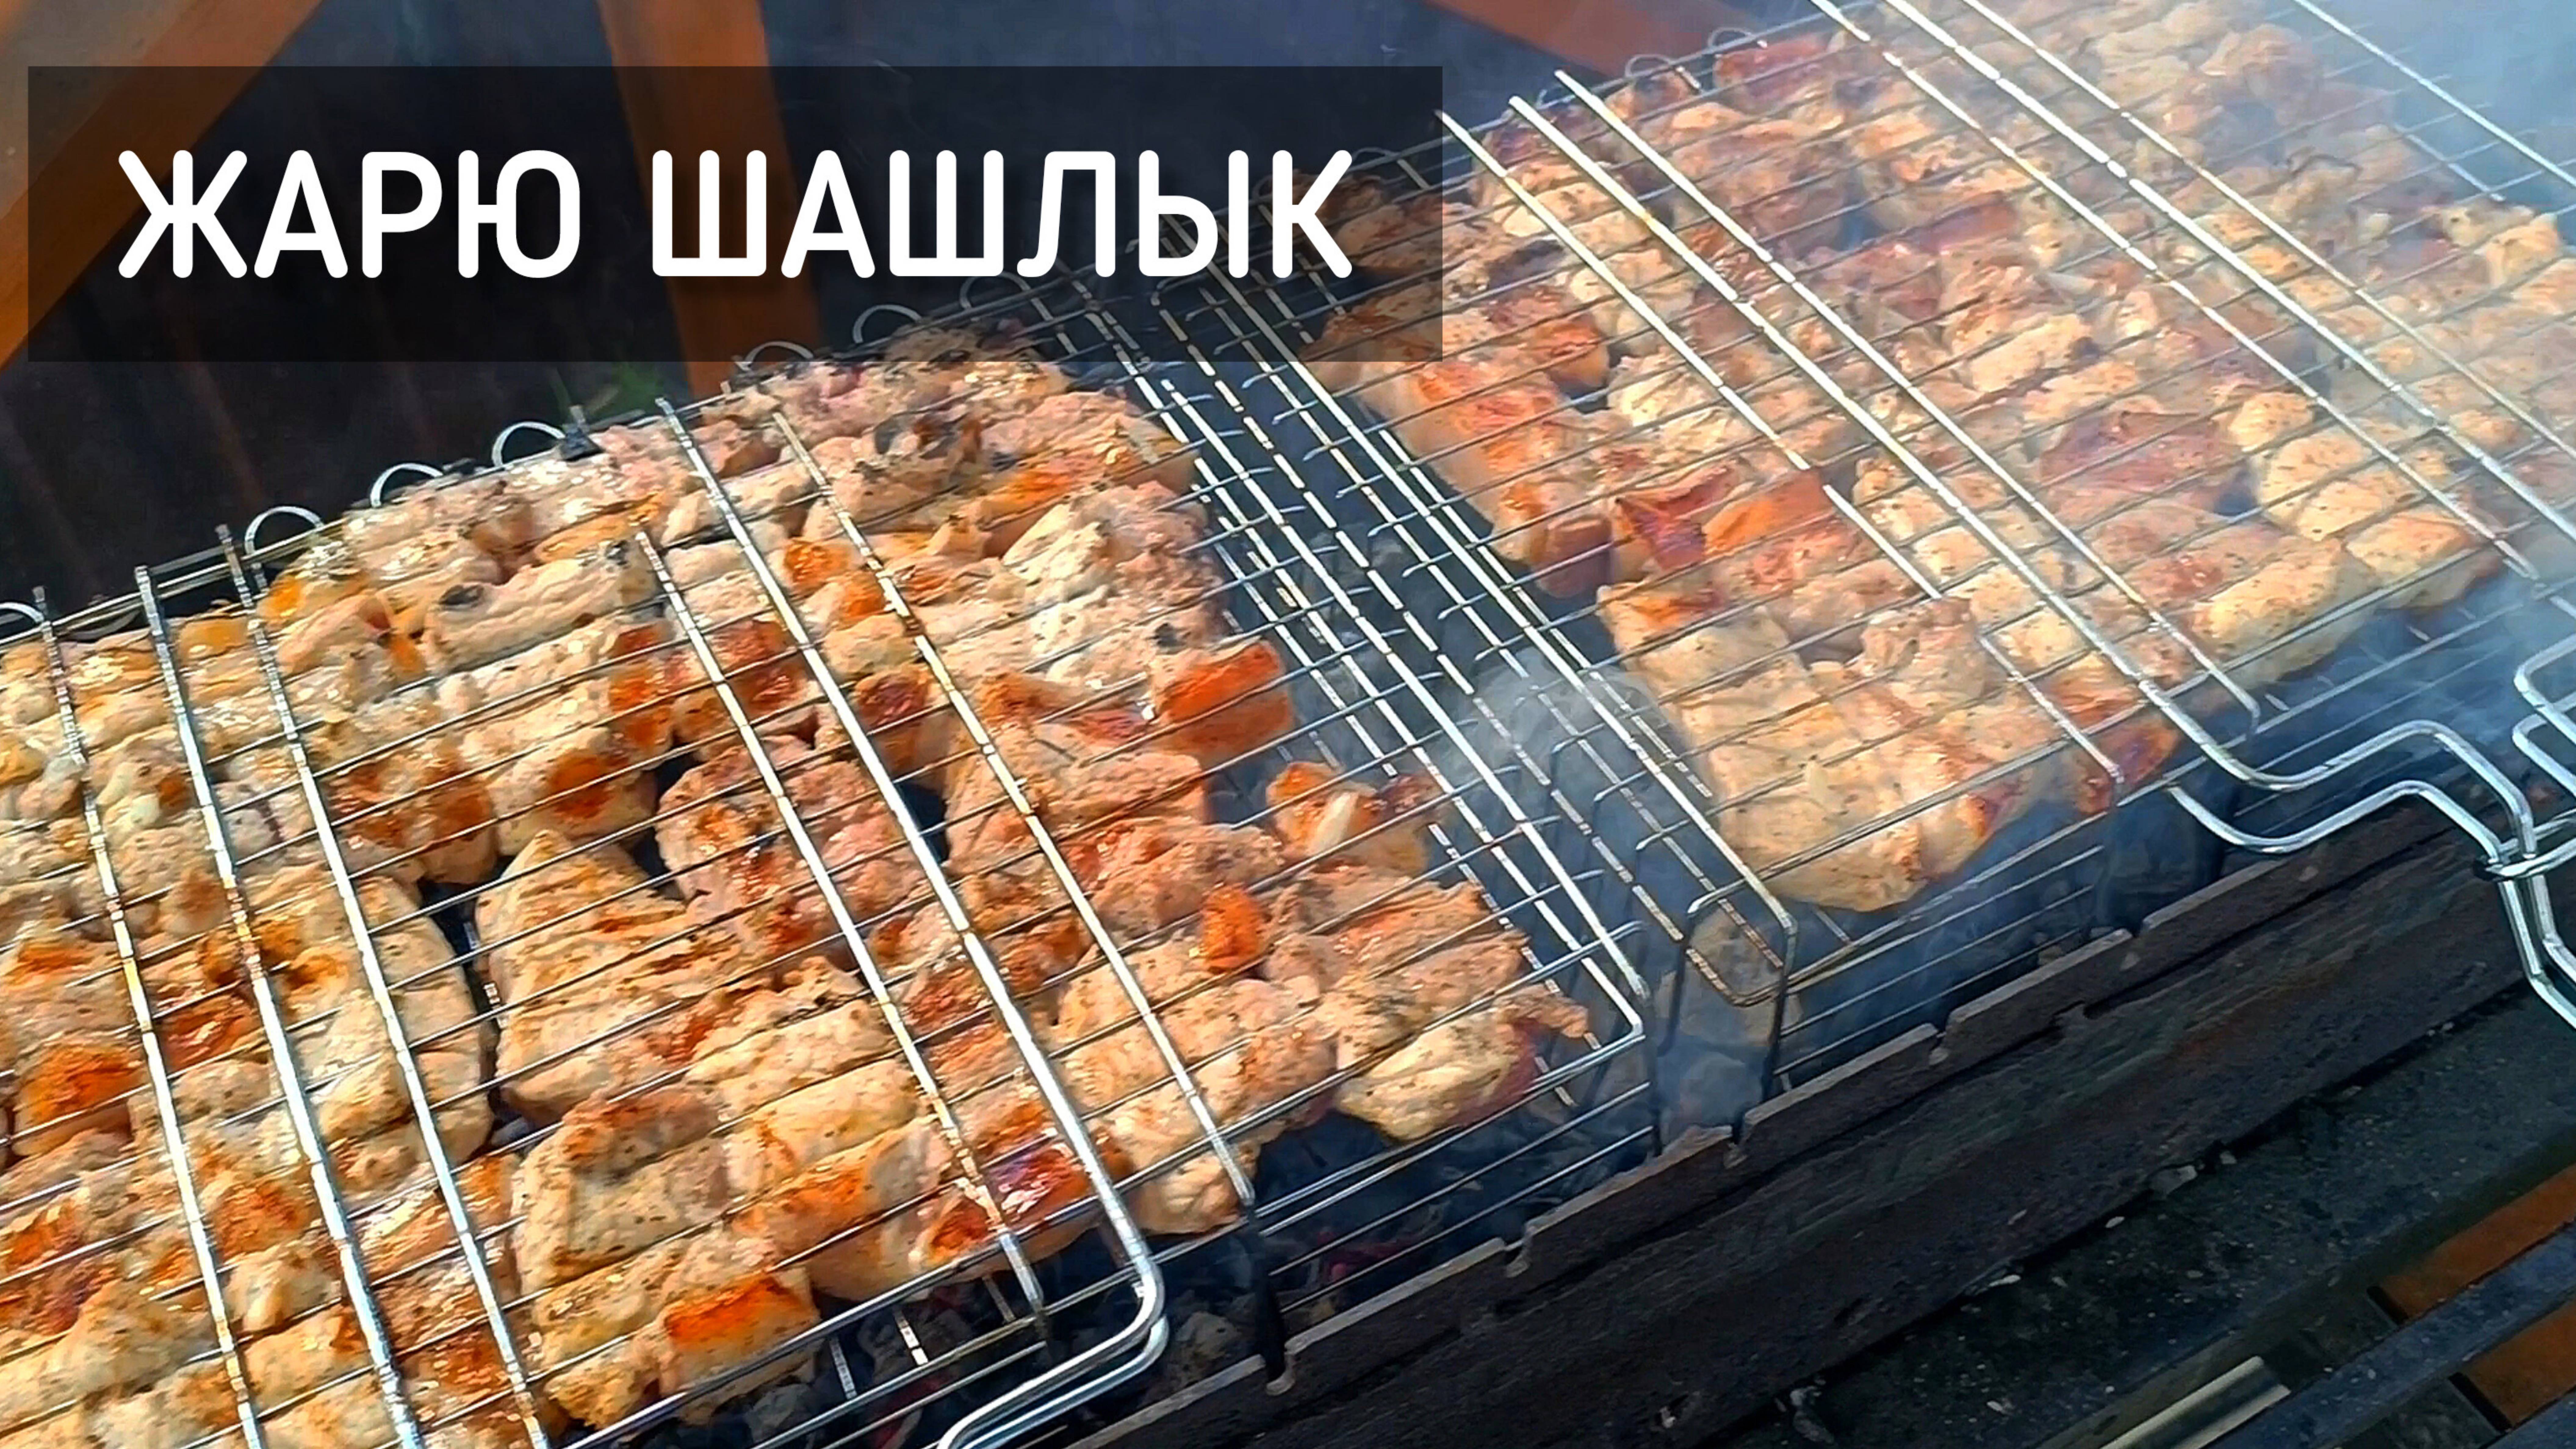 Жарю шашлык на даче в Подмосковье. Шашлык из баранины, курицы и свинины / Frying meat #шашлык #мясо